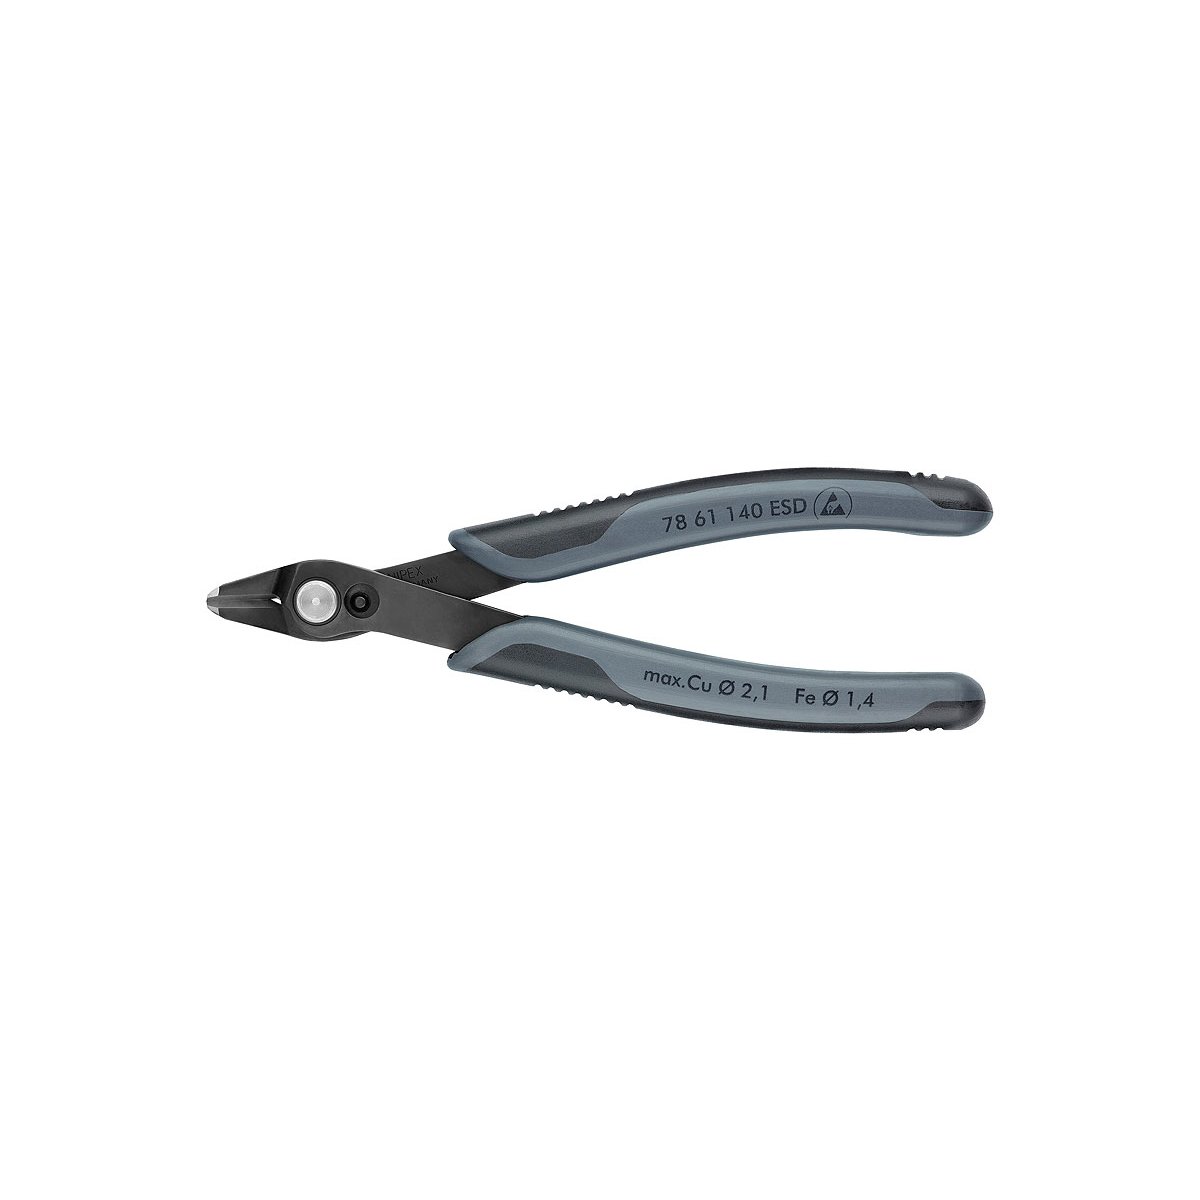 Electronic Super Knips® XL Бокорезы прецизионные ESD, для кабельных стяжек, нерж., 140 мм, 2-комп антистатические ручки SB